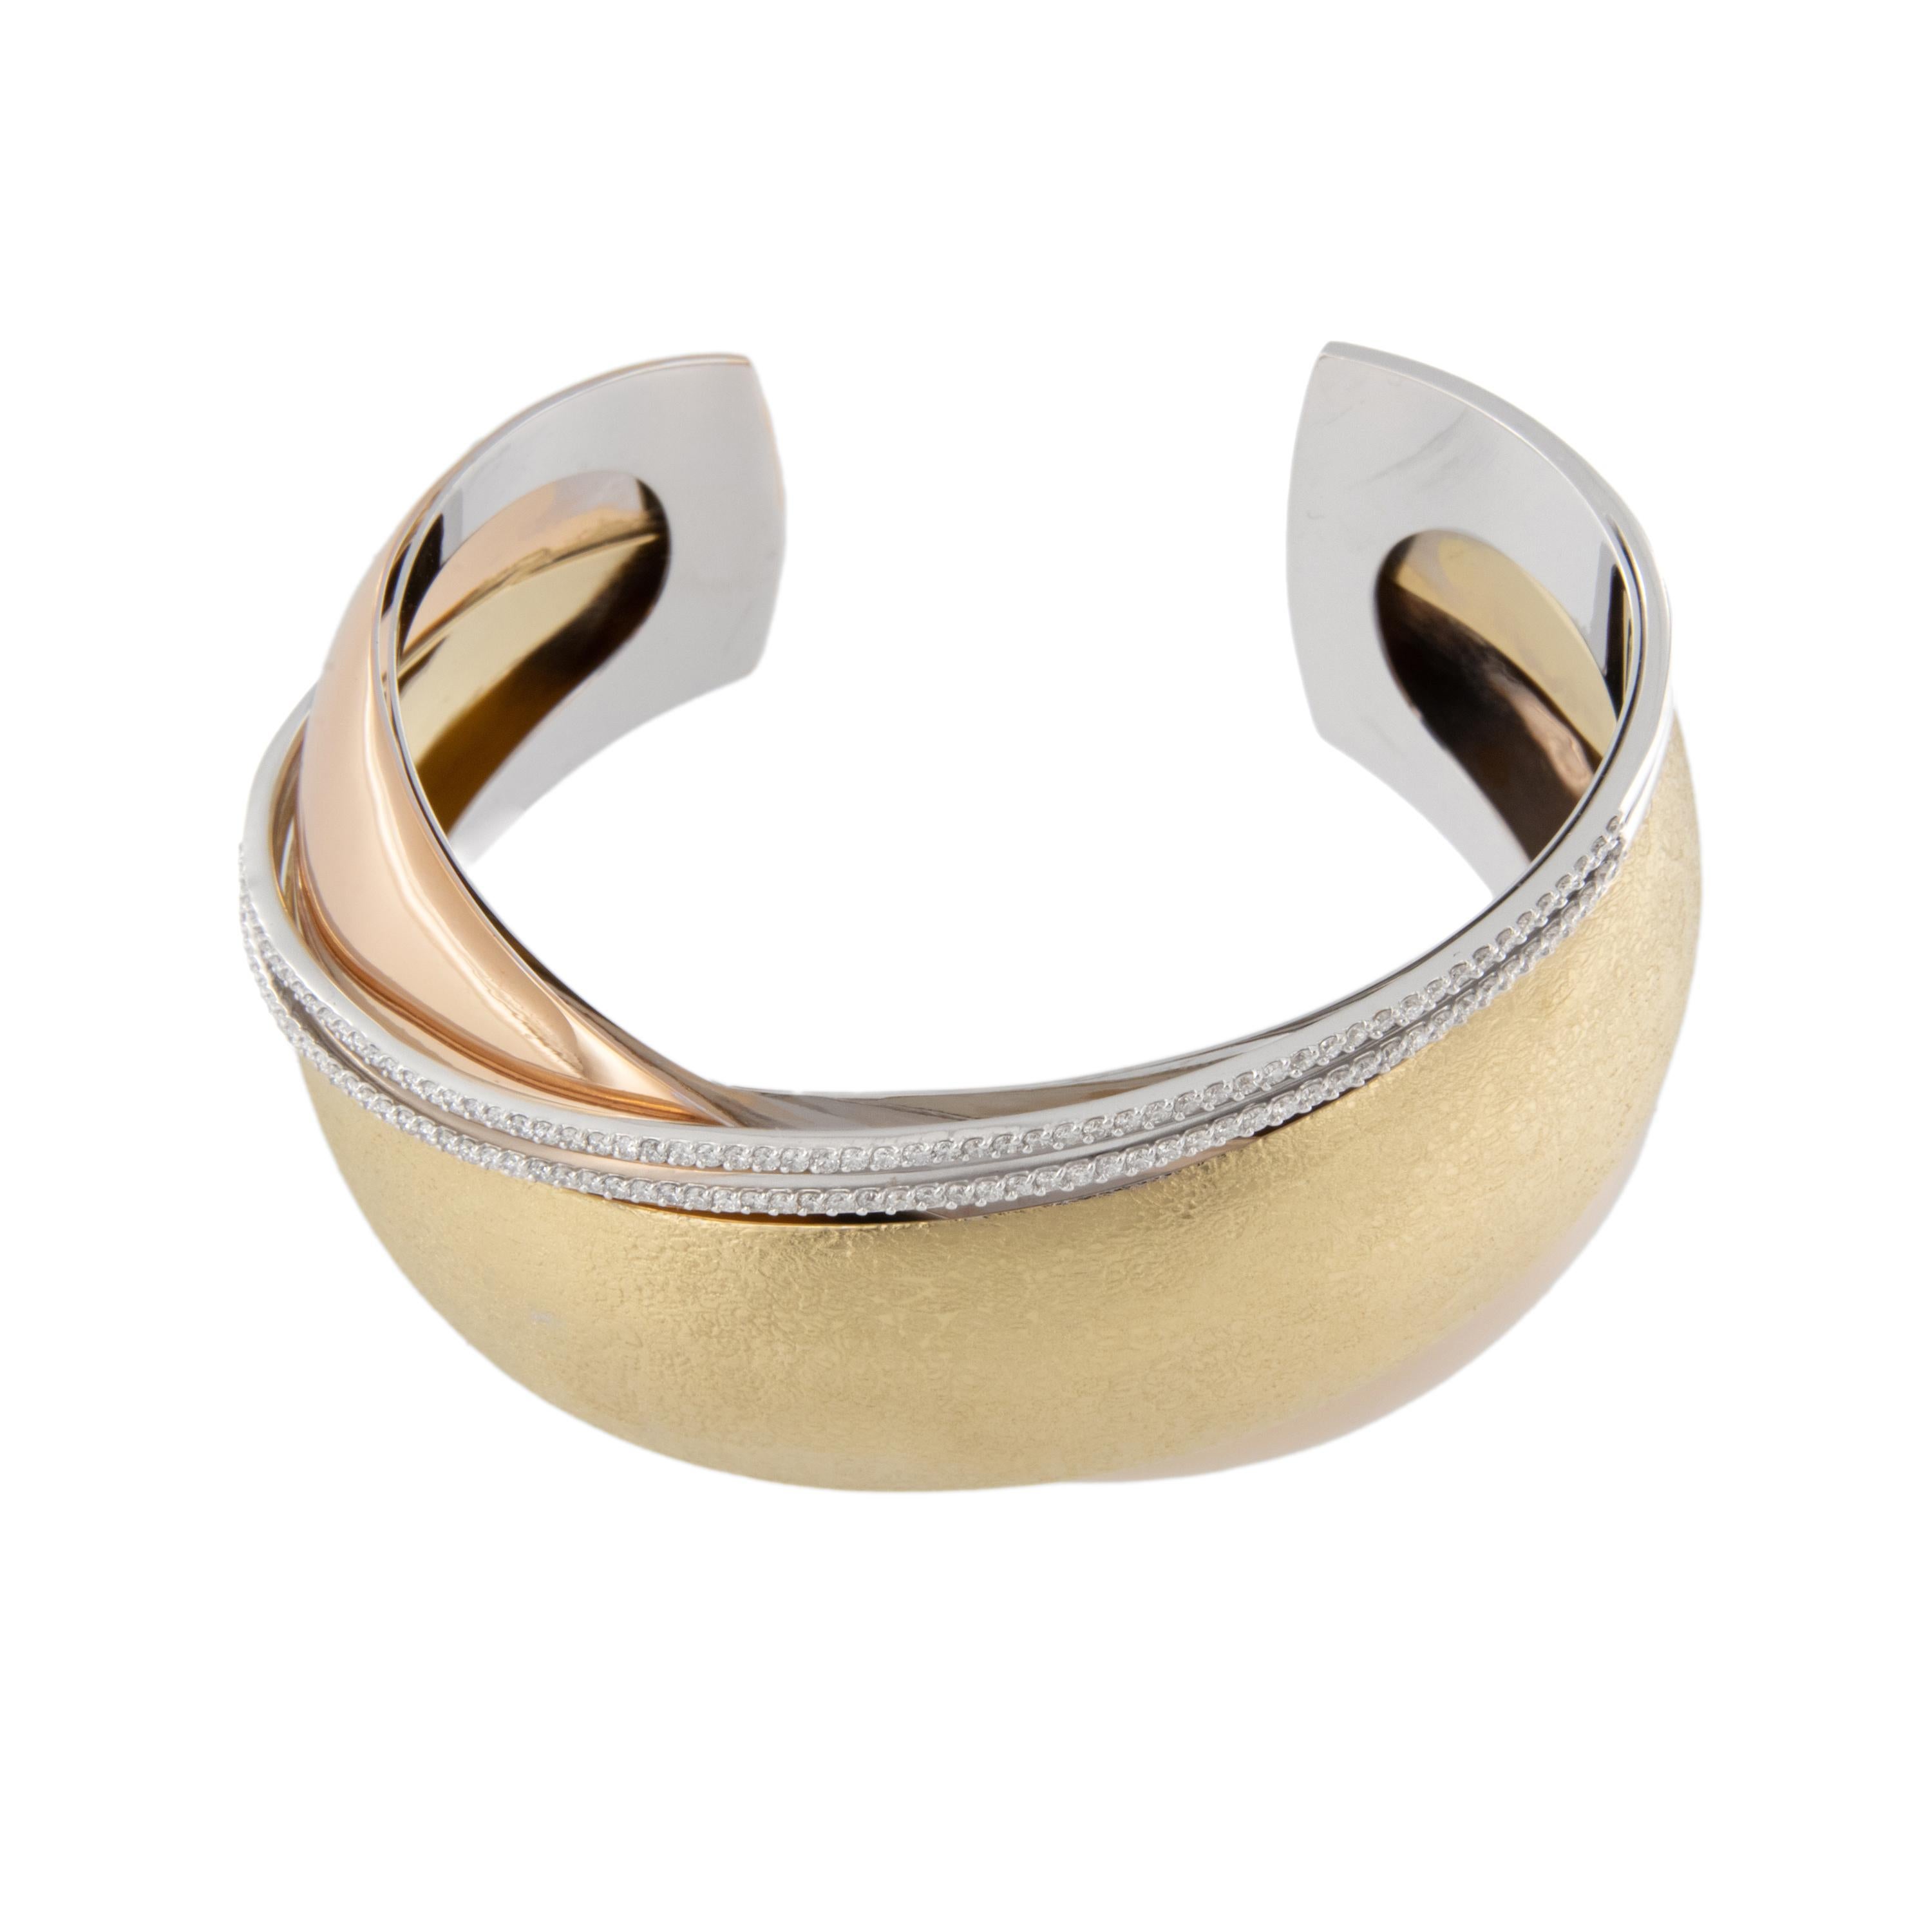 Taille ronde Bracelet croisé en or tricolore 18 carats et diamants 1,04 carat, fabriqué en Italie